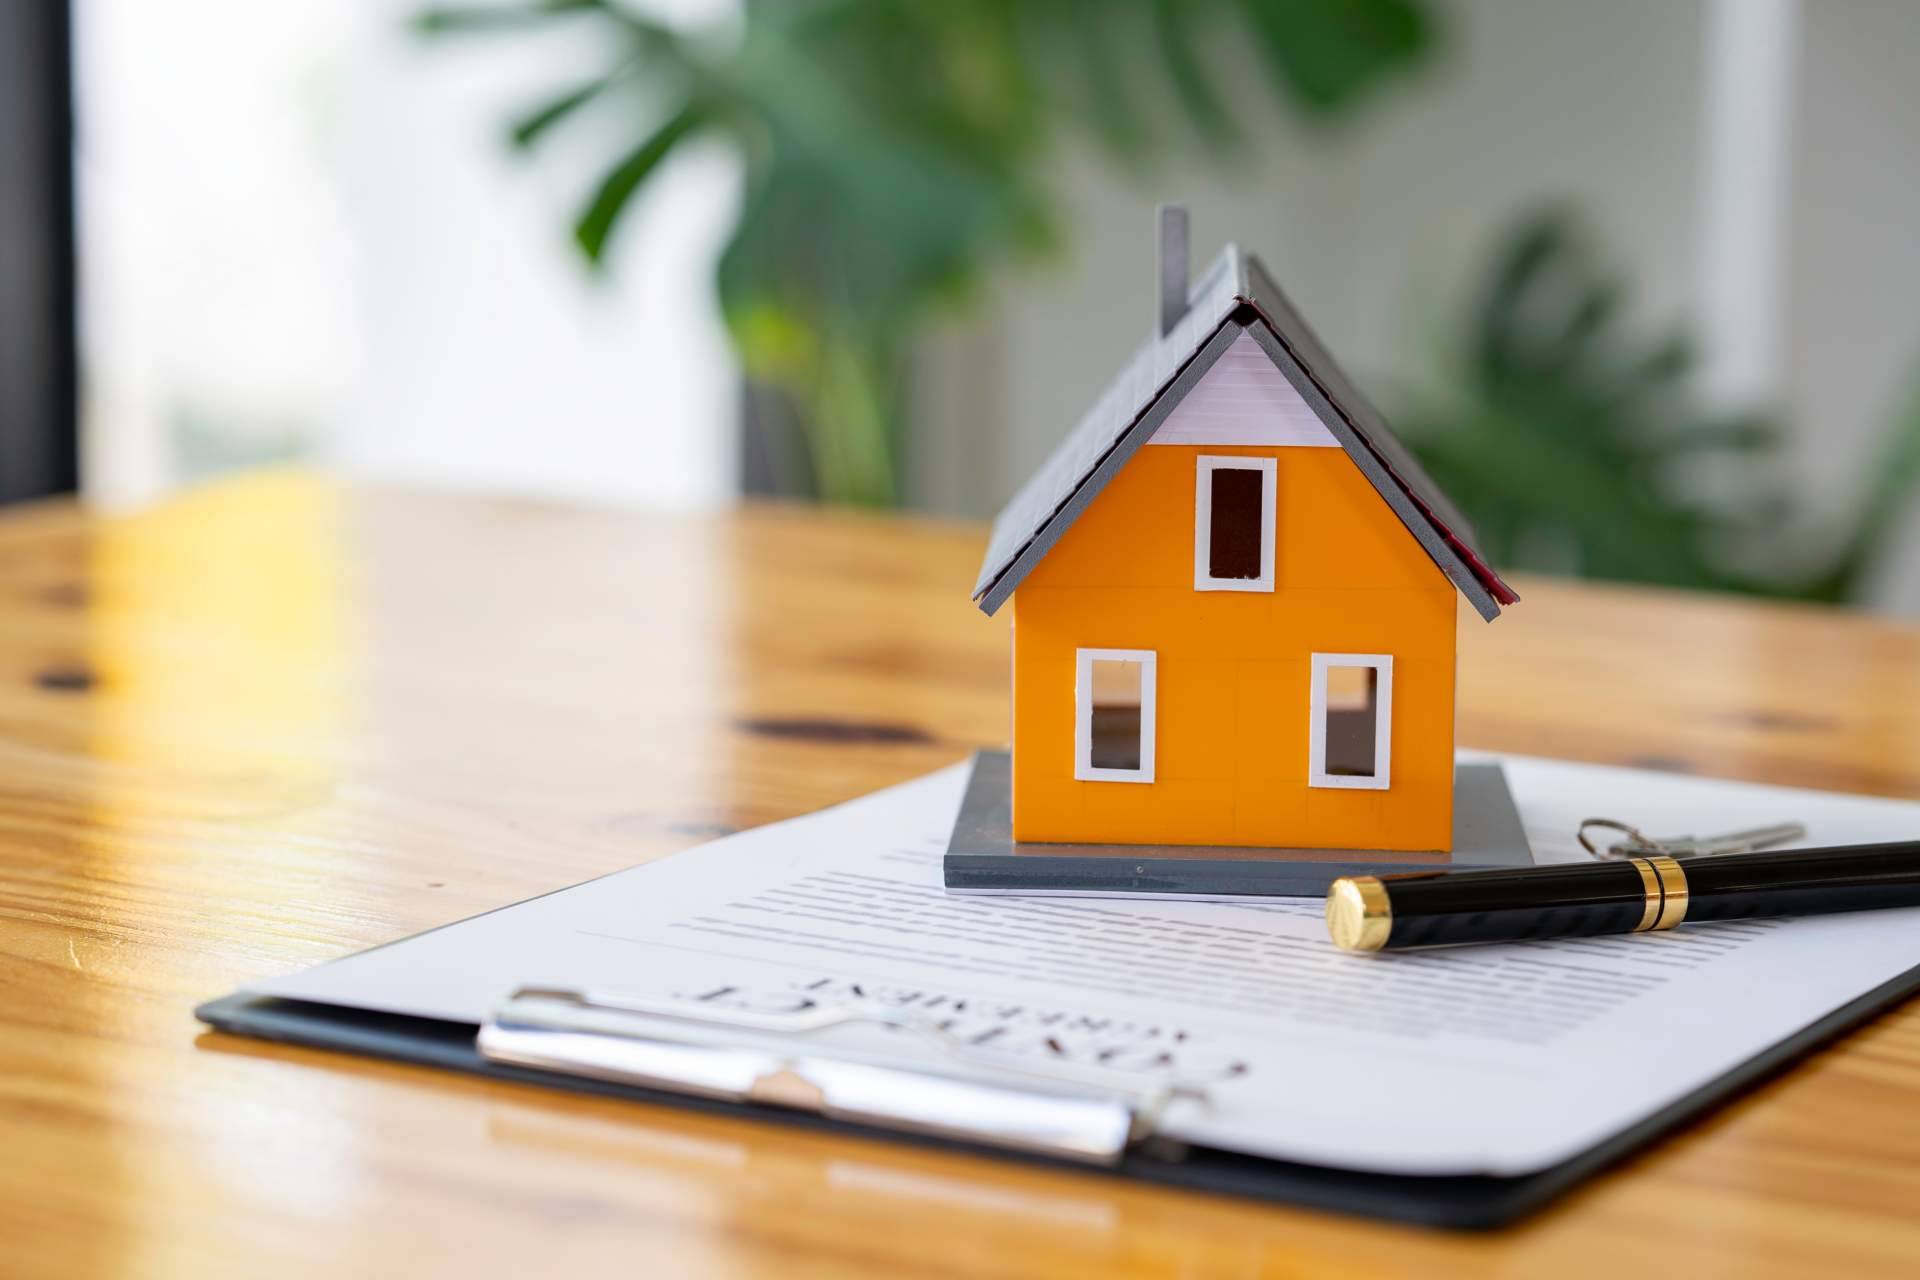 Fluctuaciones en el mercado provocan cambios en el interés hipotecario